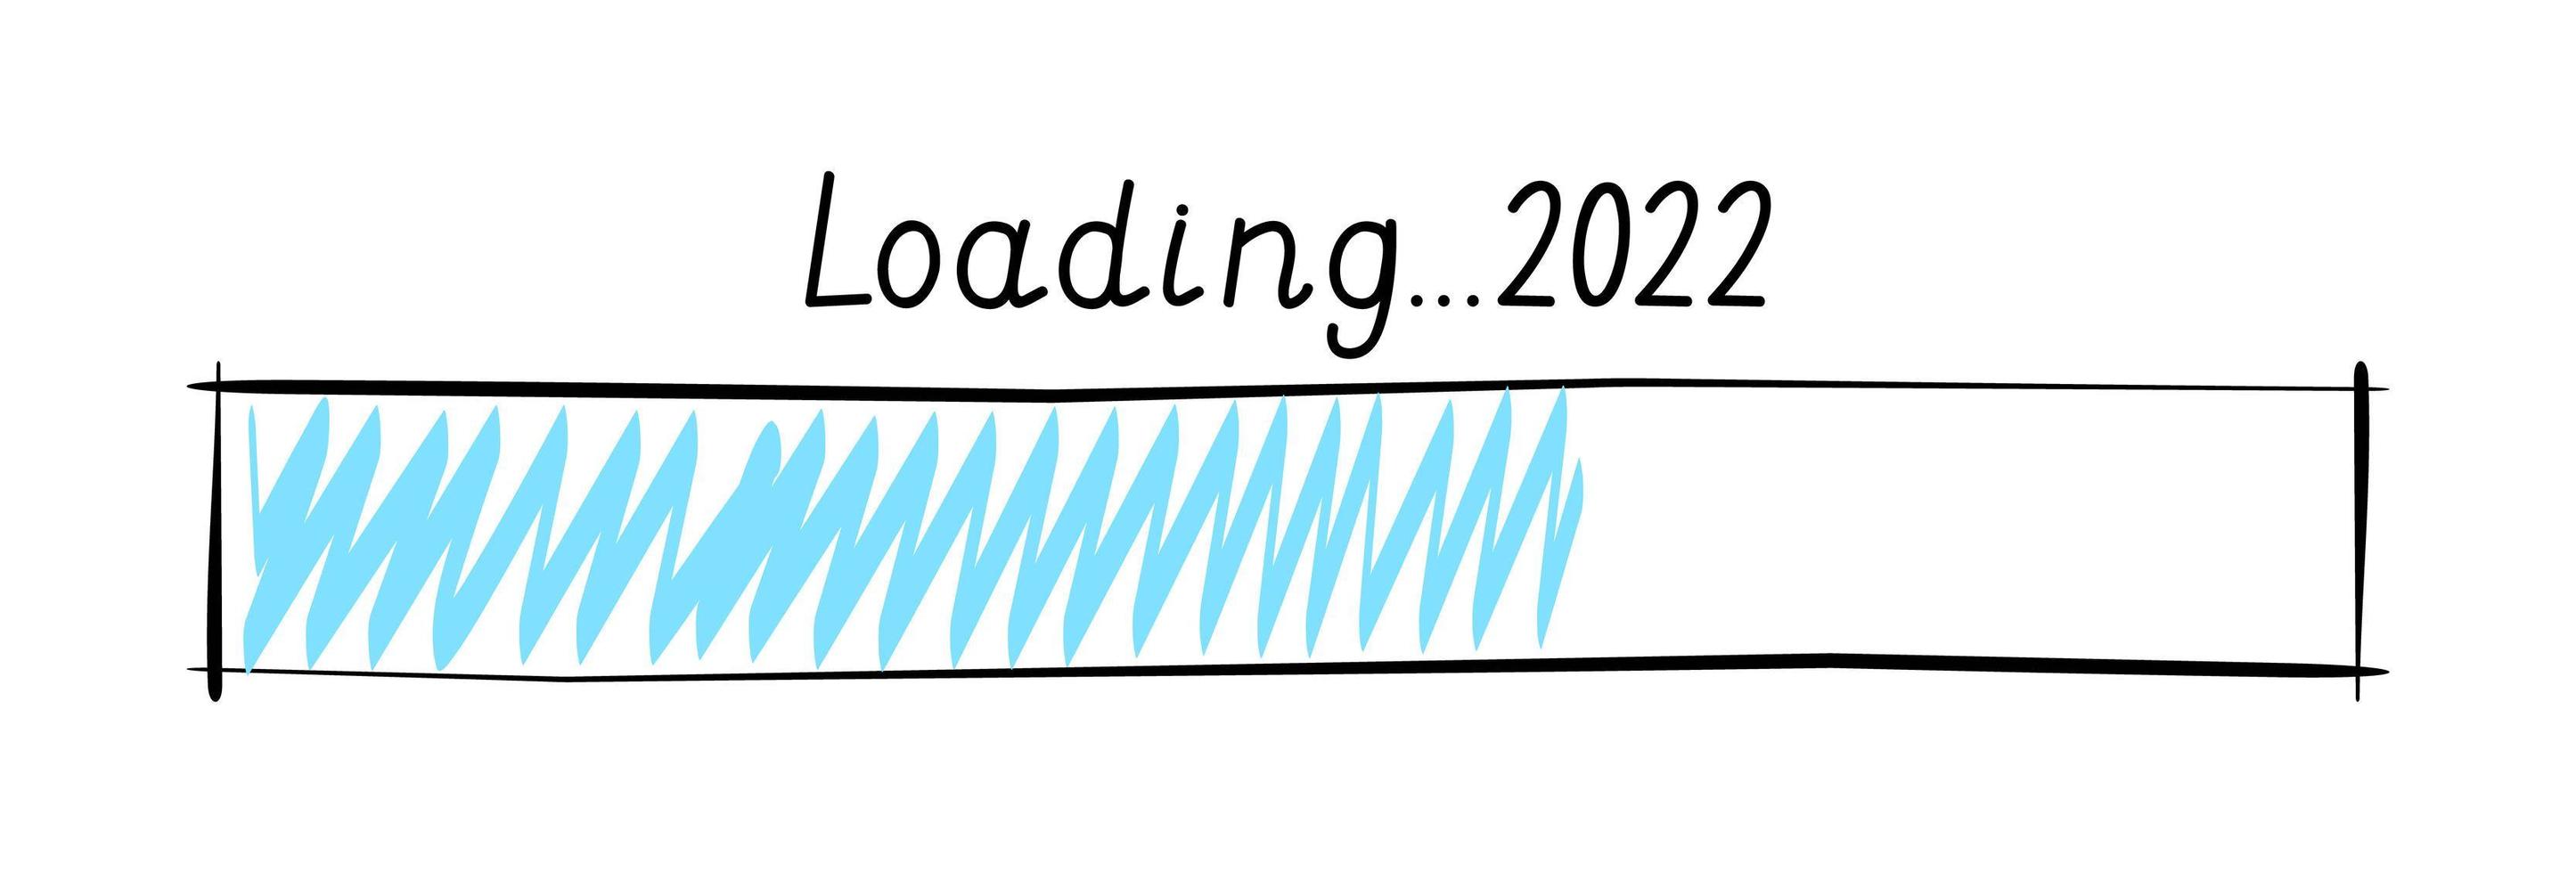 2022 Nieuwjaar laadbalk teken getekend in doodle stijl. wintervakantie binnenkort, eindejaars laadbalk knop vector voor grafisch ontwerp